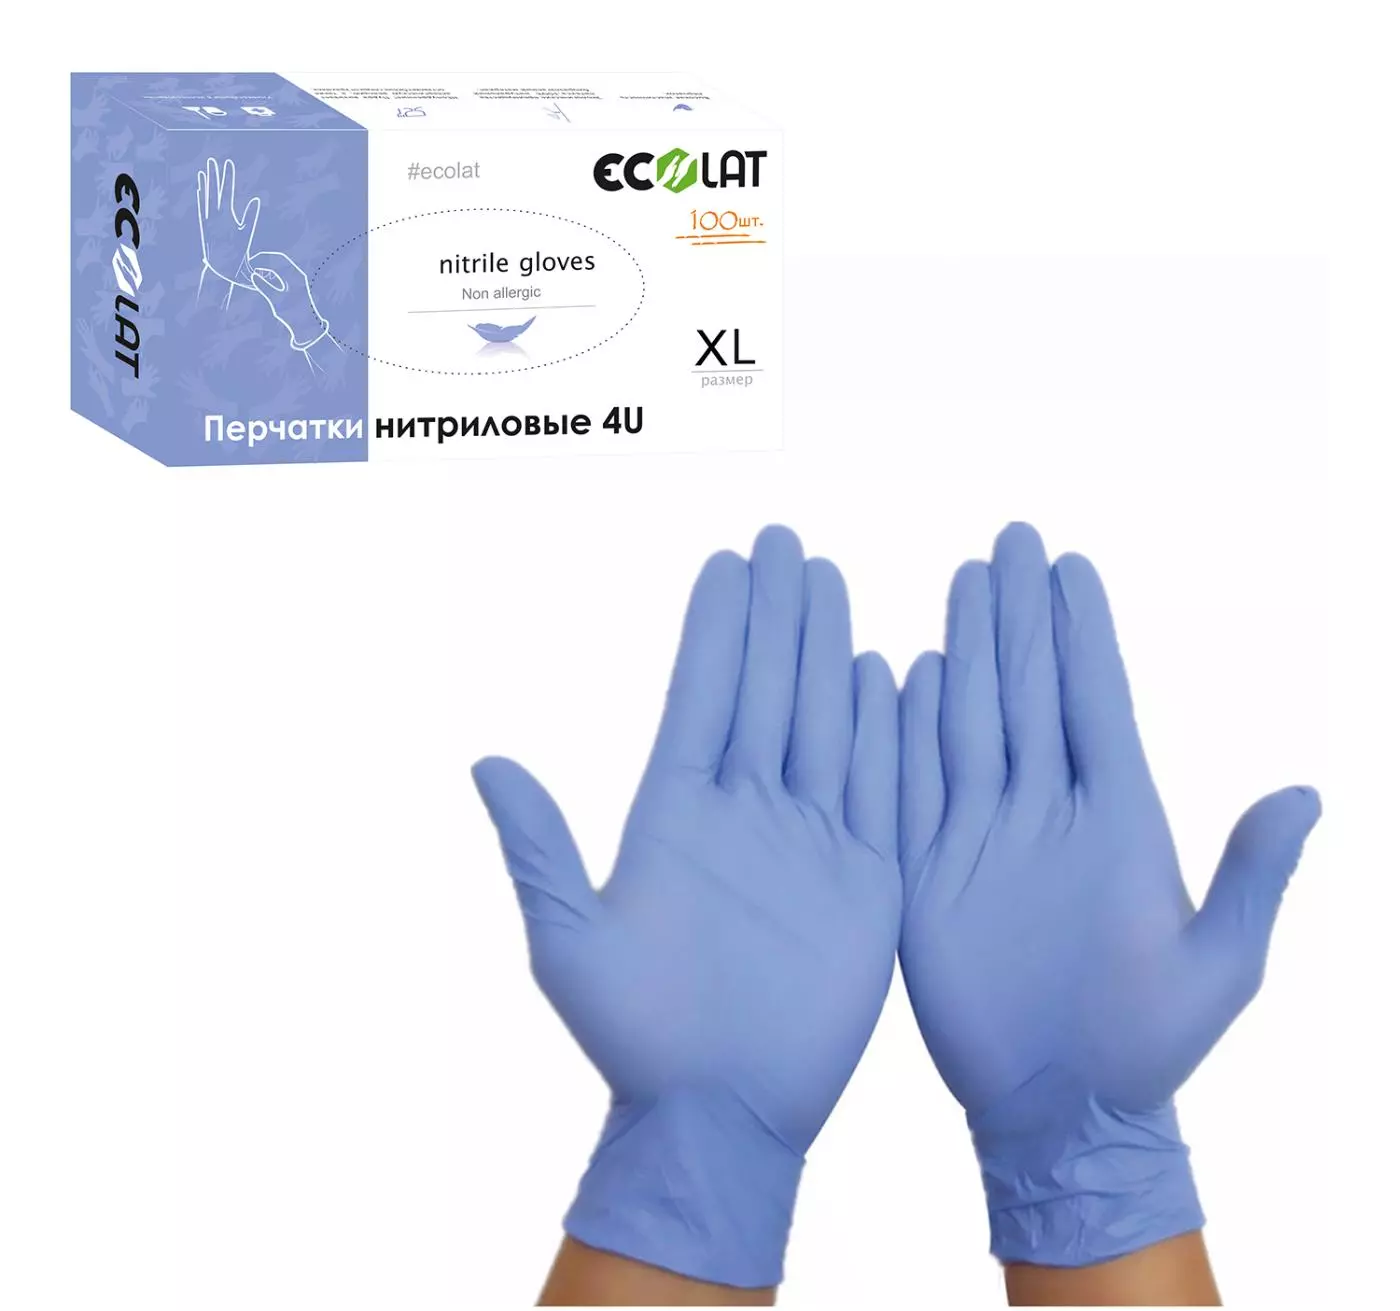 Нитриловые перчатки EcoLat 4U, 100 шт./уп. размер XL, 3037/XL